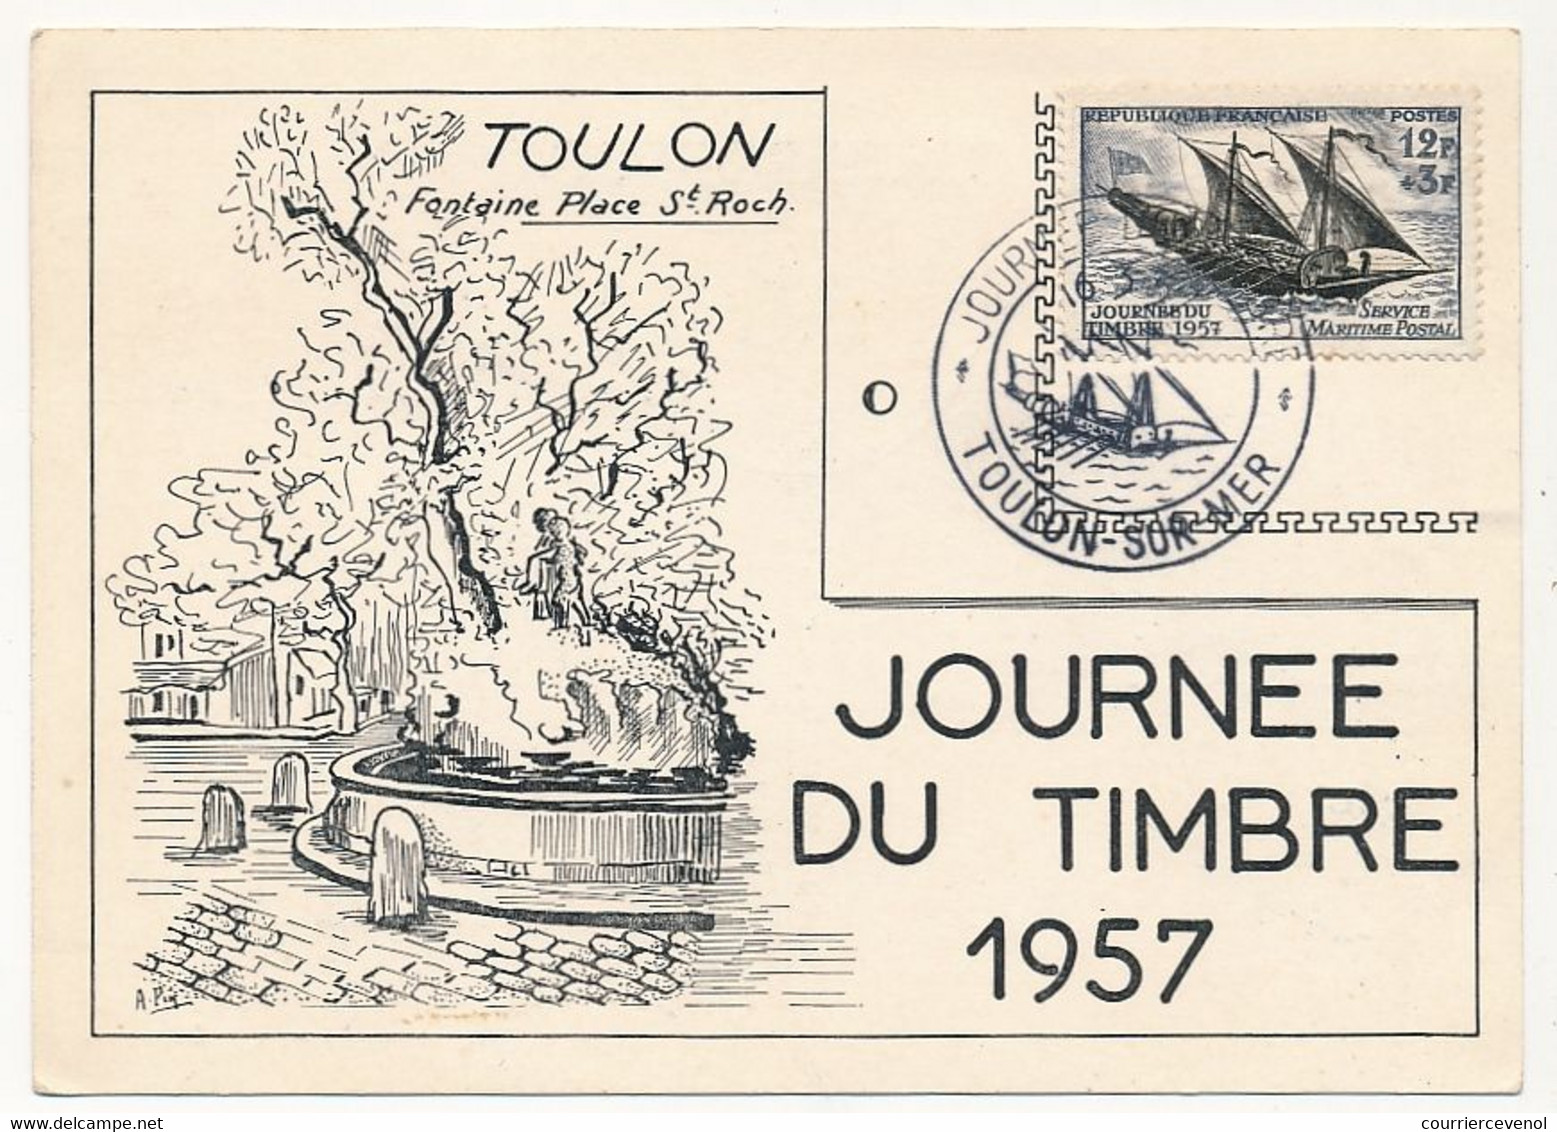 FRANCE - Carte Locale - Journée Du Timbre 1957 - Service Maritime Postal - TOULON-SUR-MER - 16/3/1957 - Vignette Au Dos - Journée Du Timbre